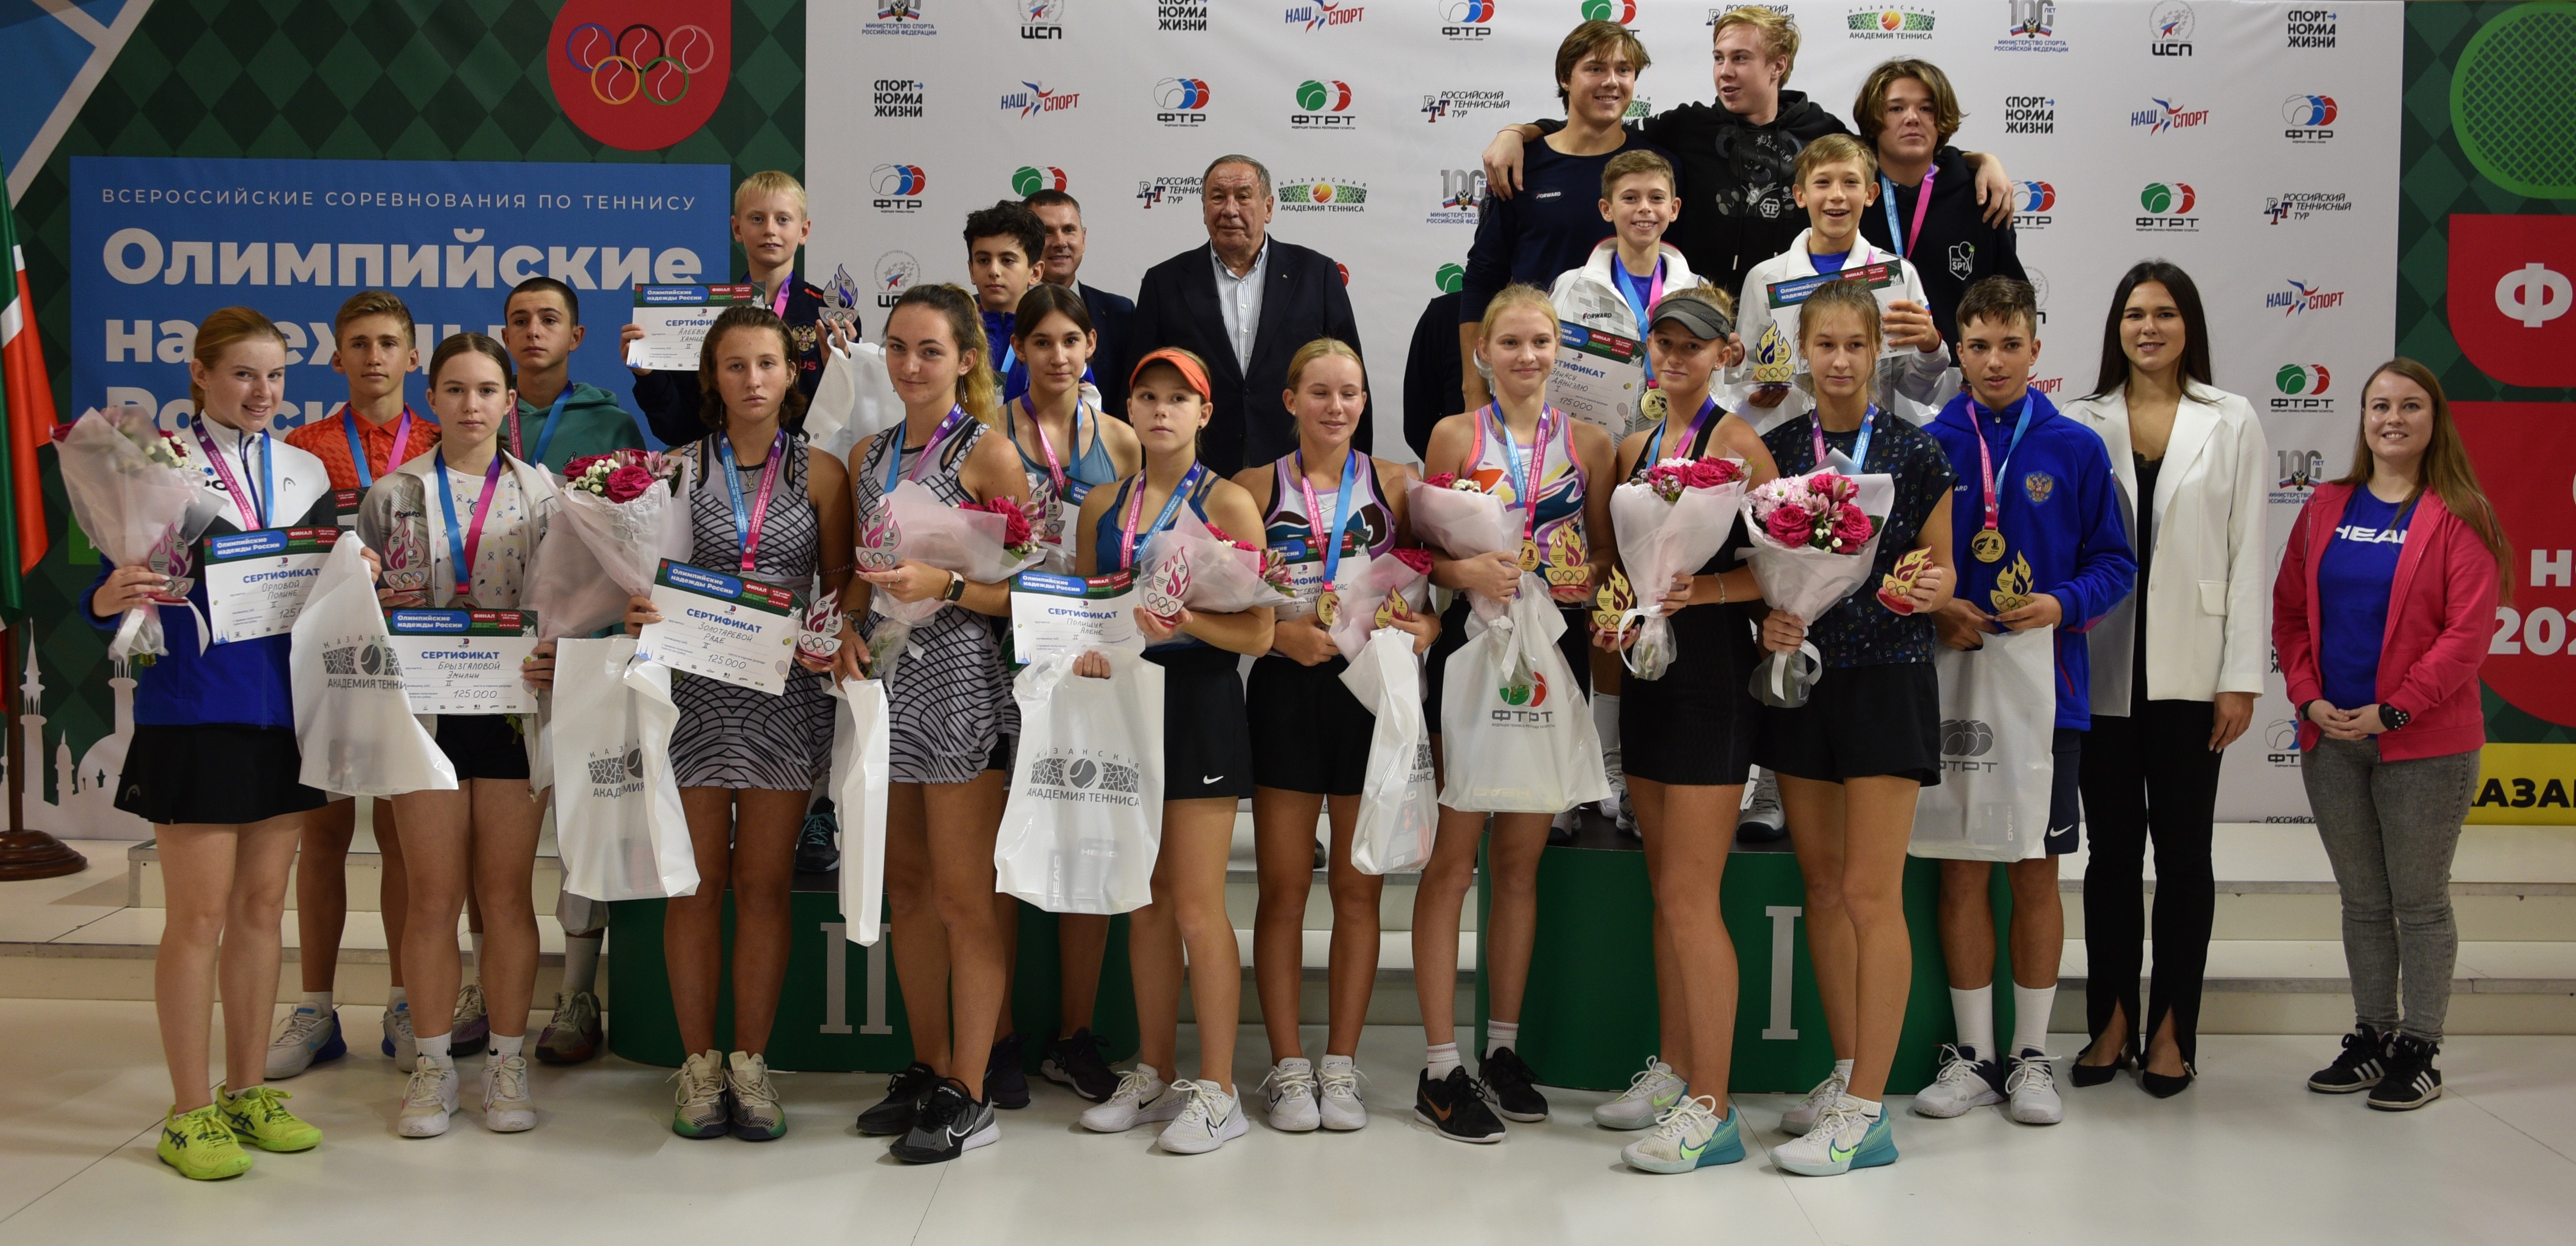 Суперфинал теннисного турнира «Олимпийские надежды России» прошел в Казани